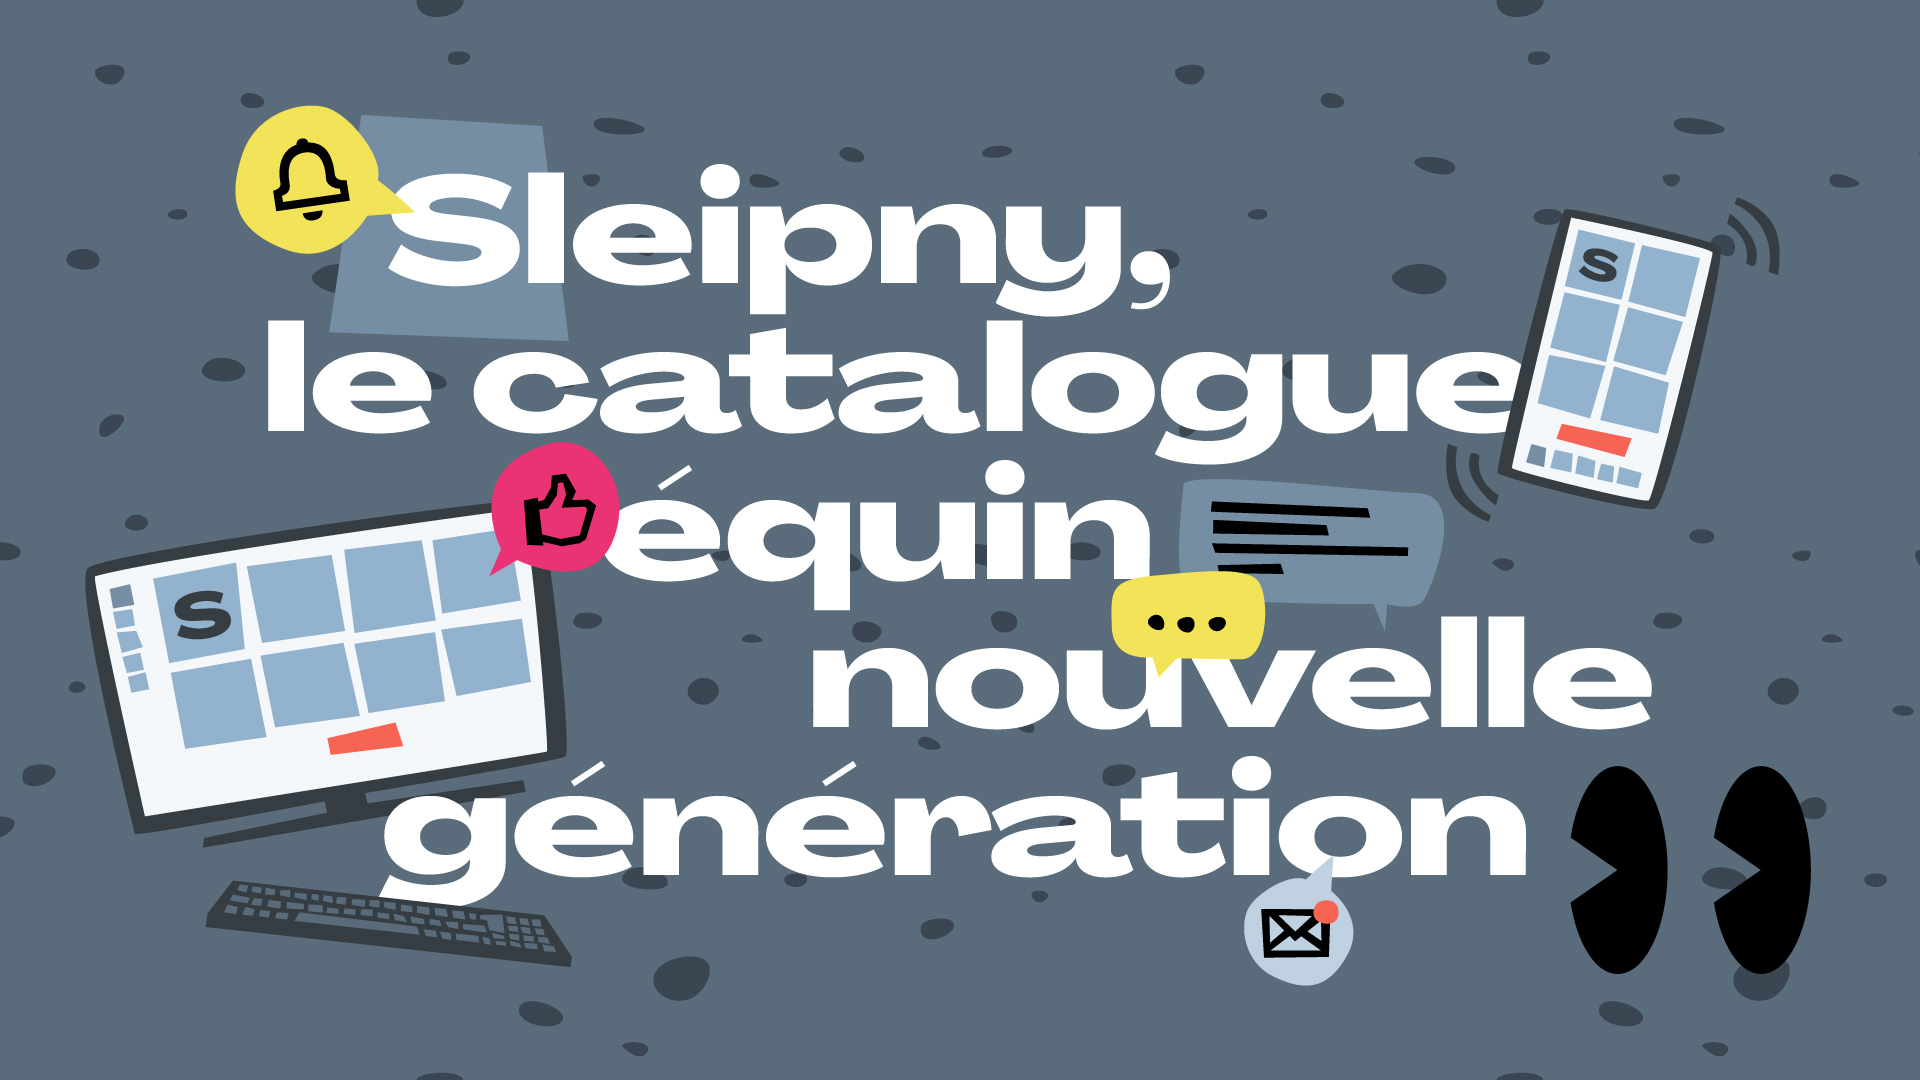 Sleipny le catalogue équi nouvelle génération